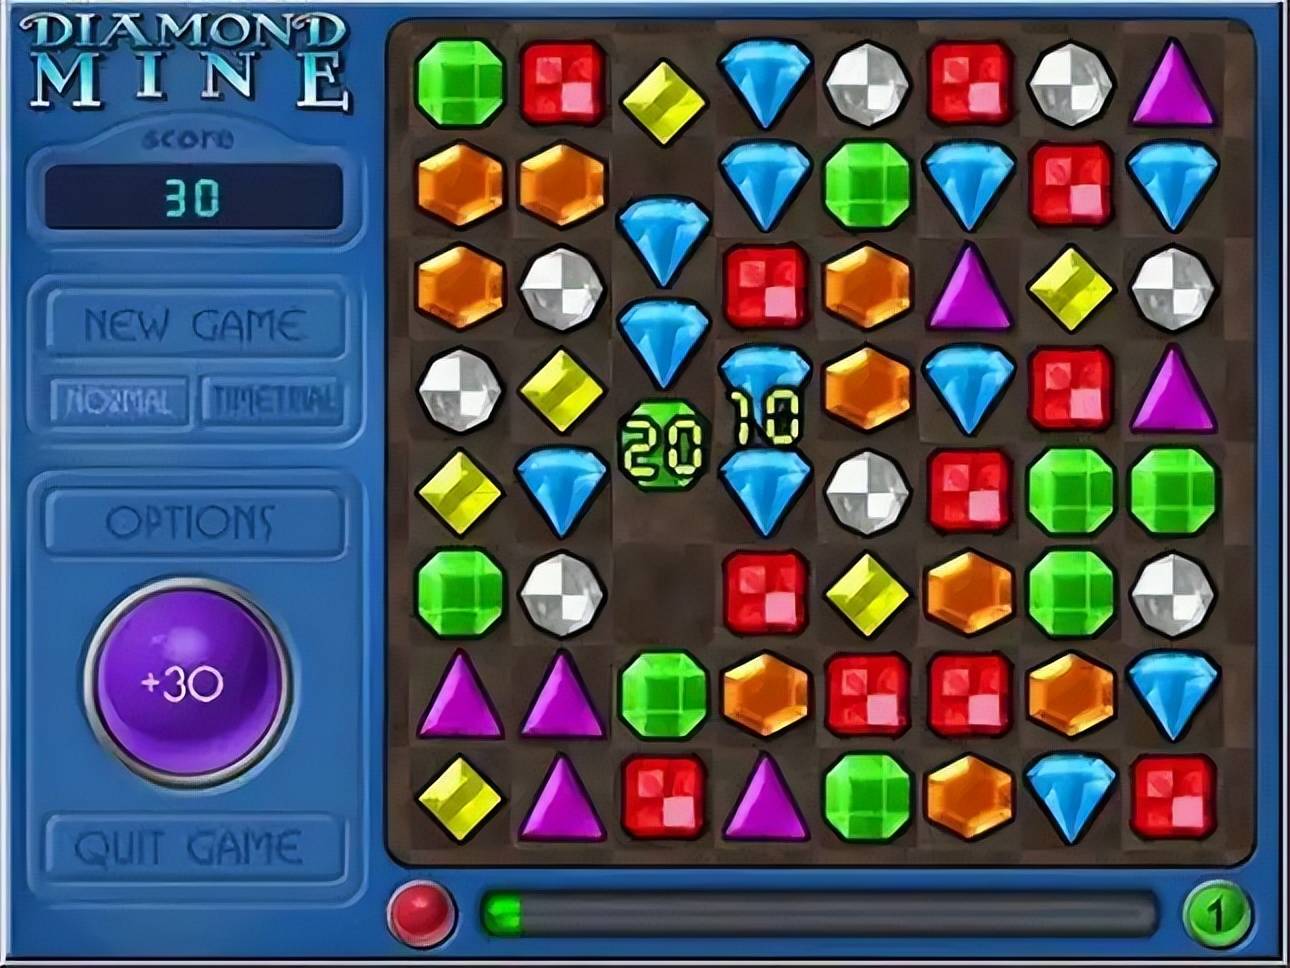 2000年,经由一款没有音效还常常崩溃的java小游戏《colors game》启发